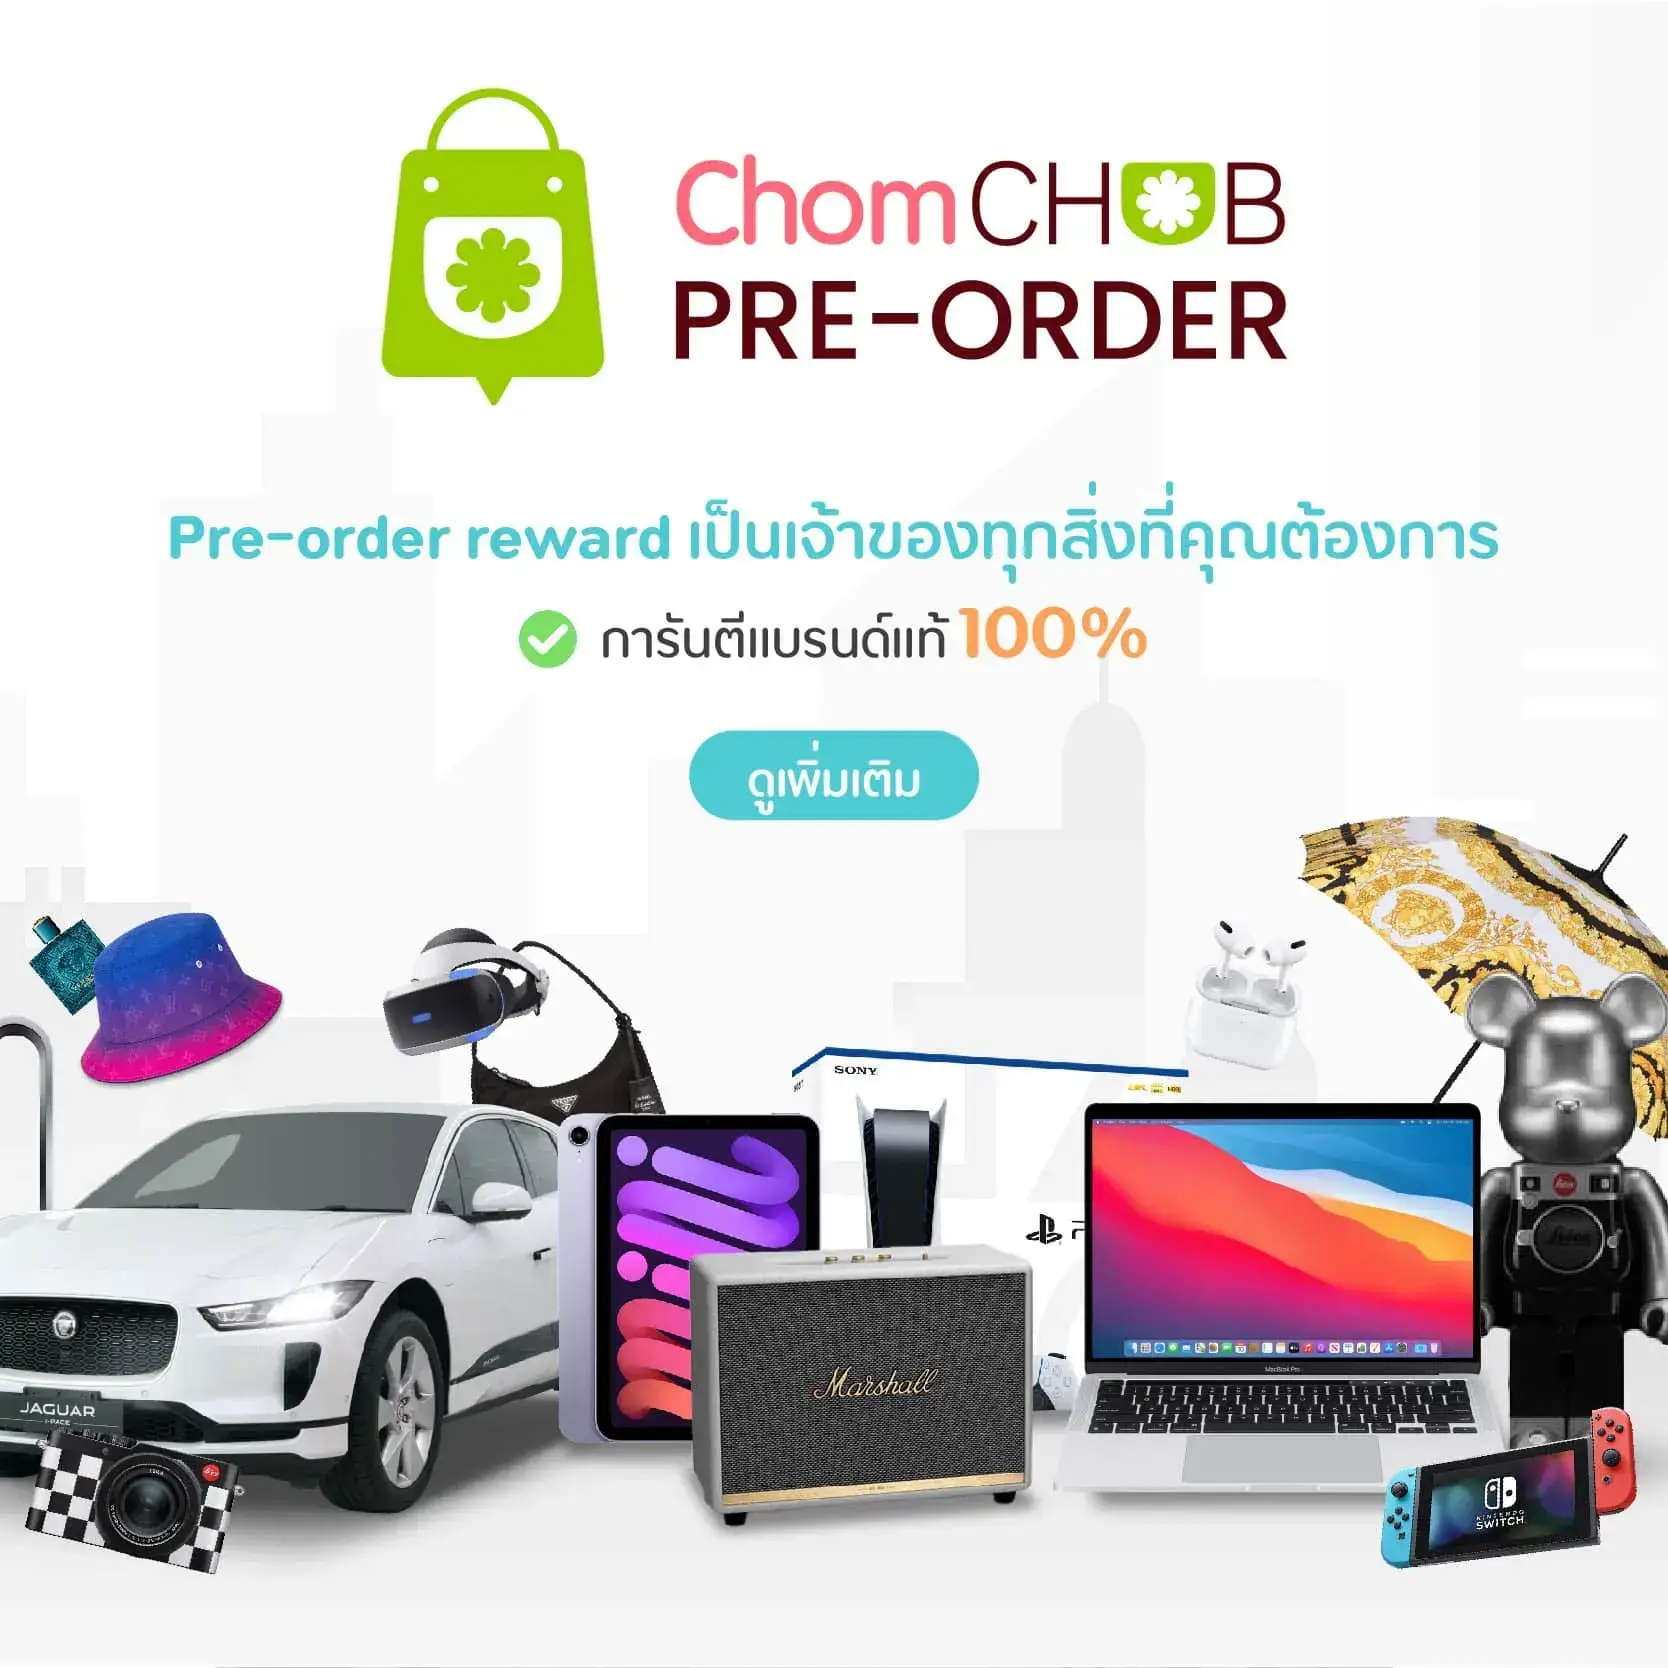 chomchob-pre-order-reward-small